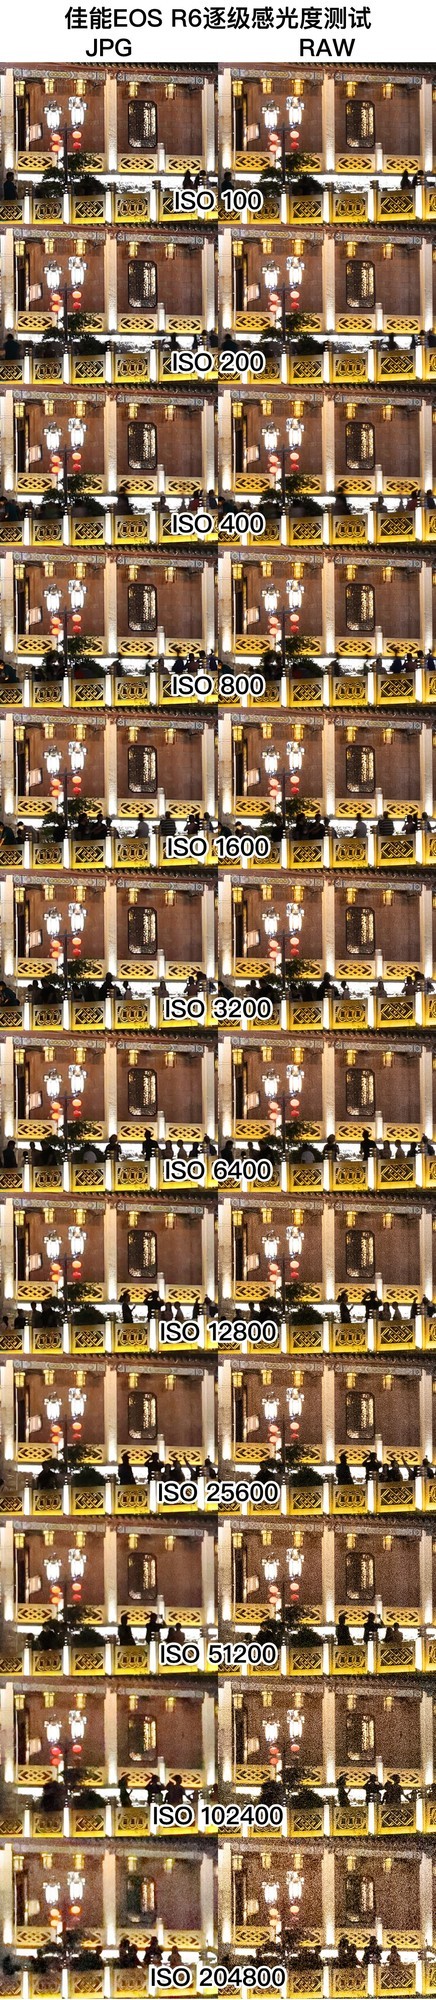 拍照与视频的均衡之选 佳能EOS R6微单评测 